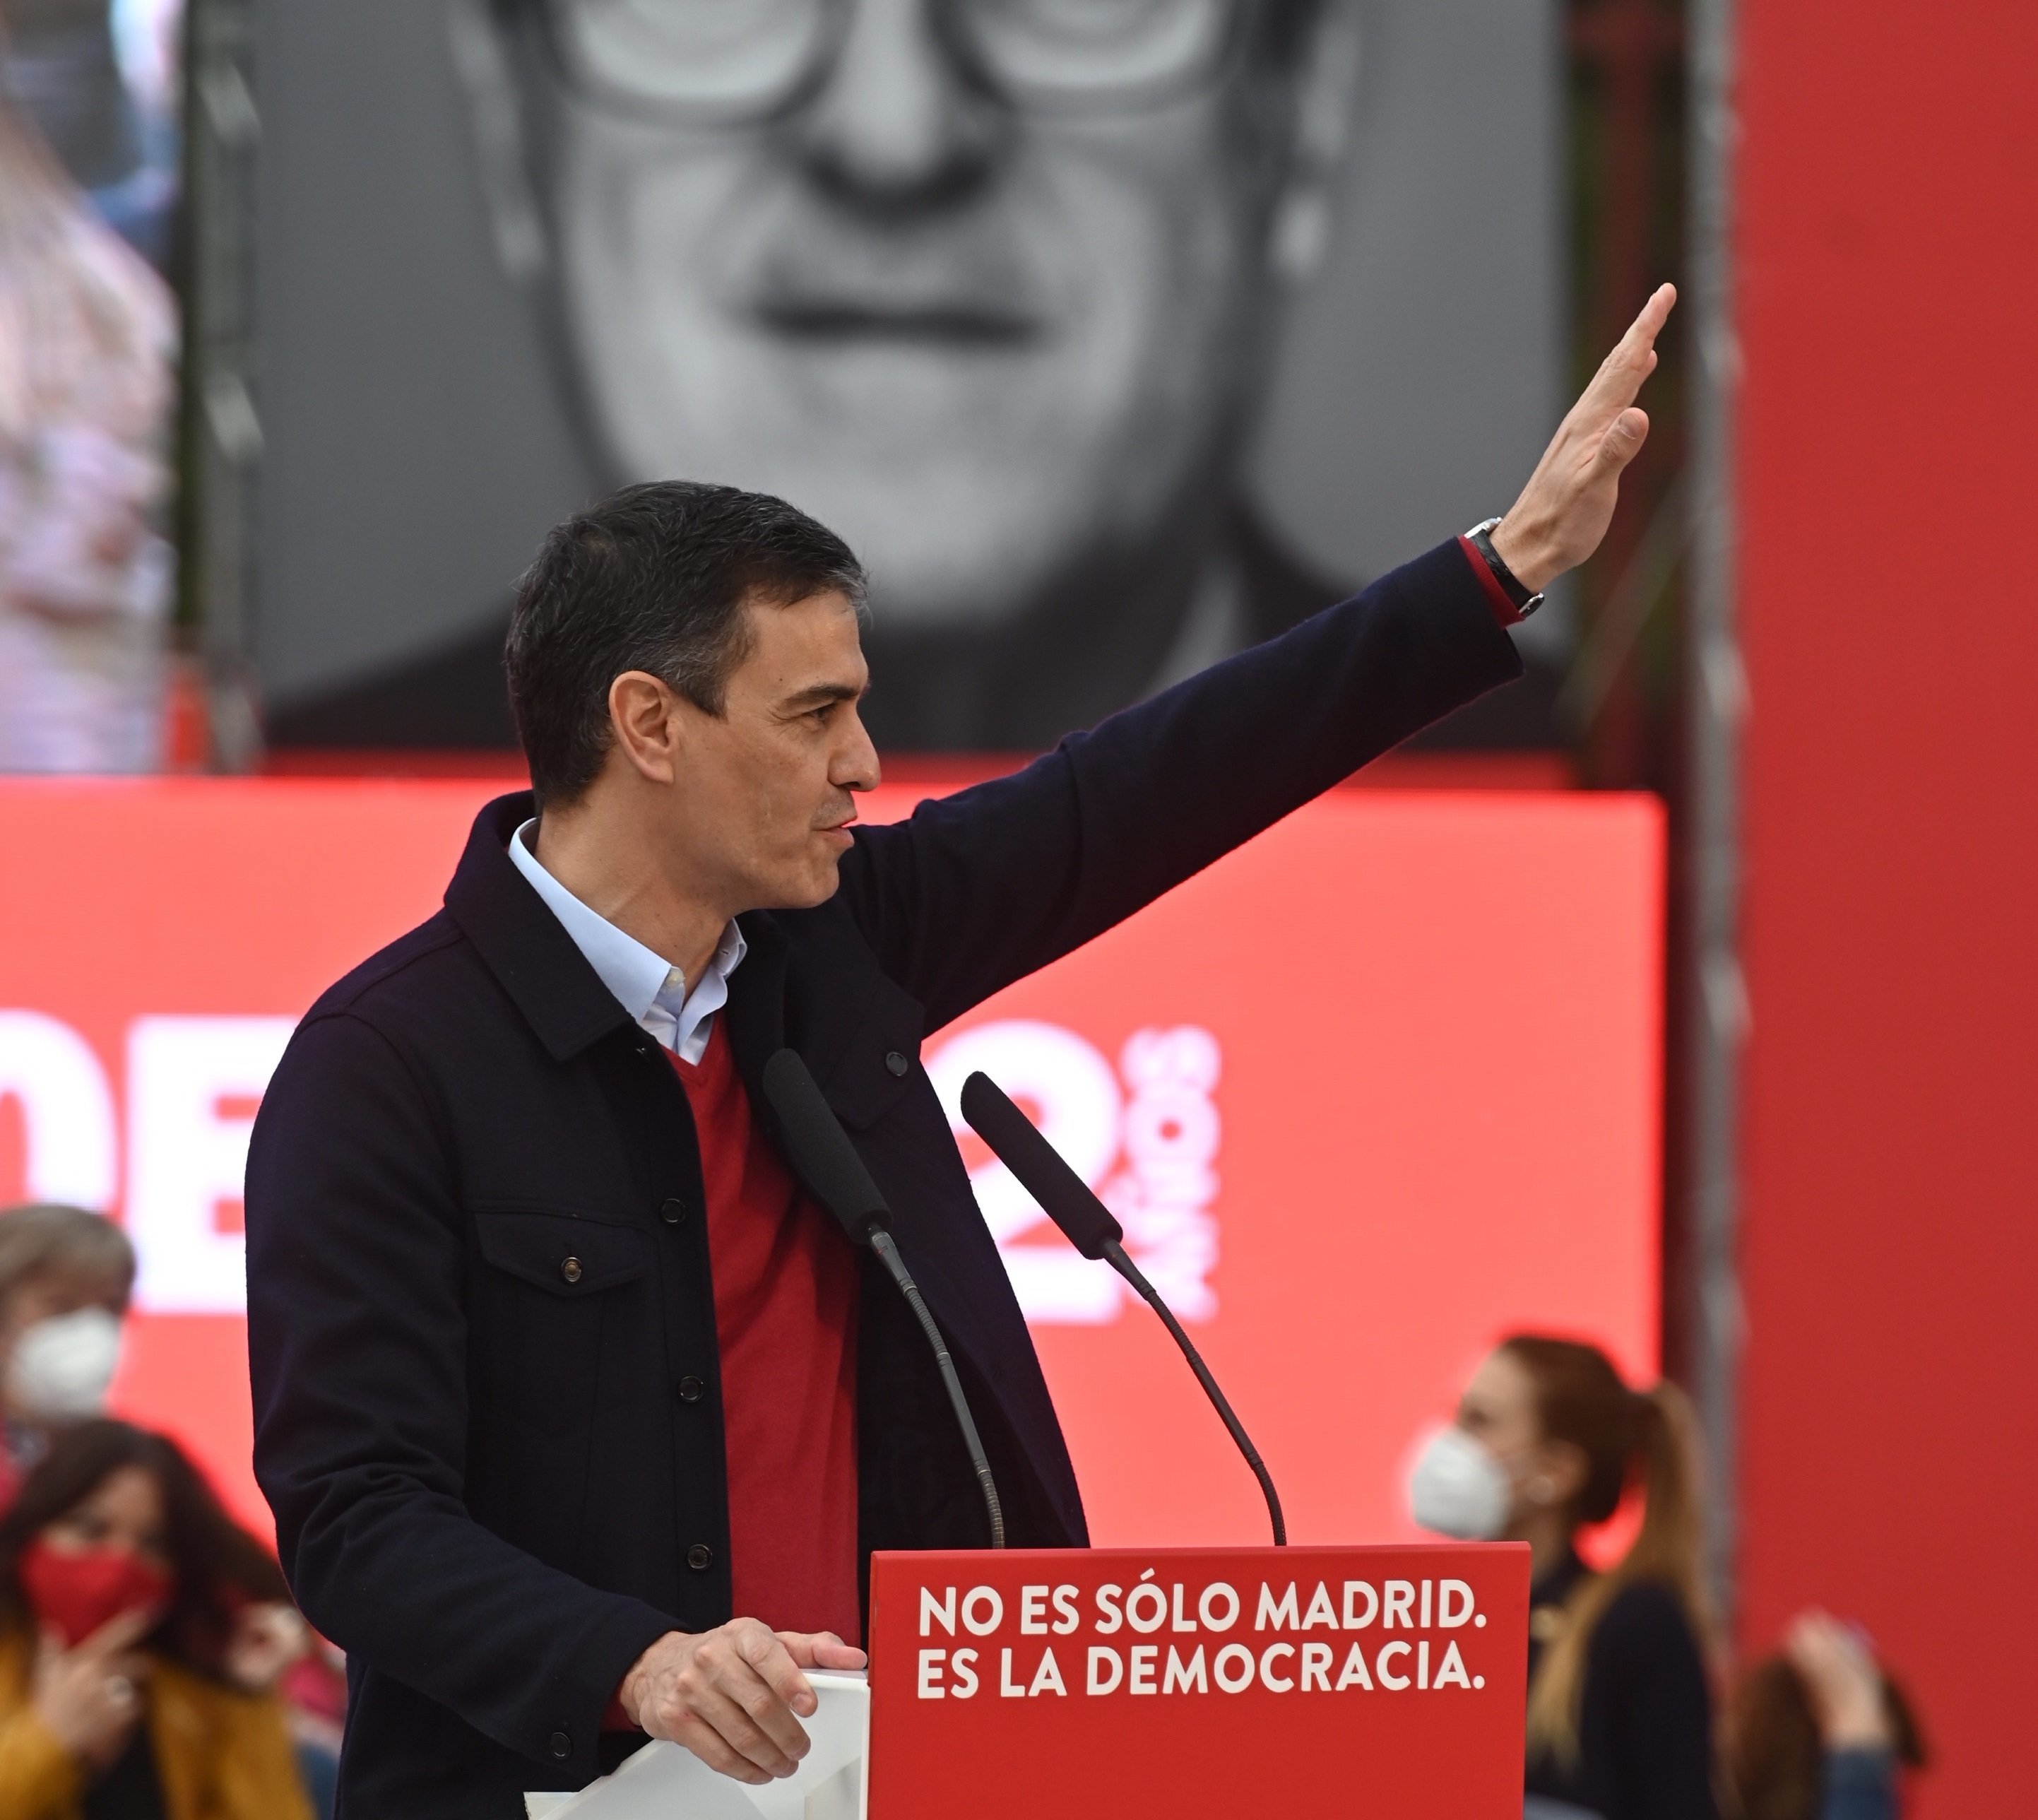 La nueva reforma fiscal de Sánchez: Peajes en las autovías y más impuestos